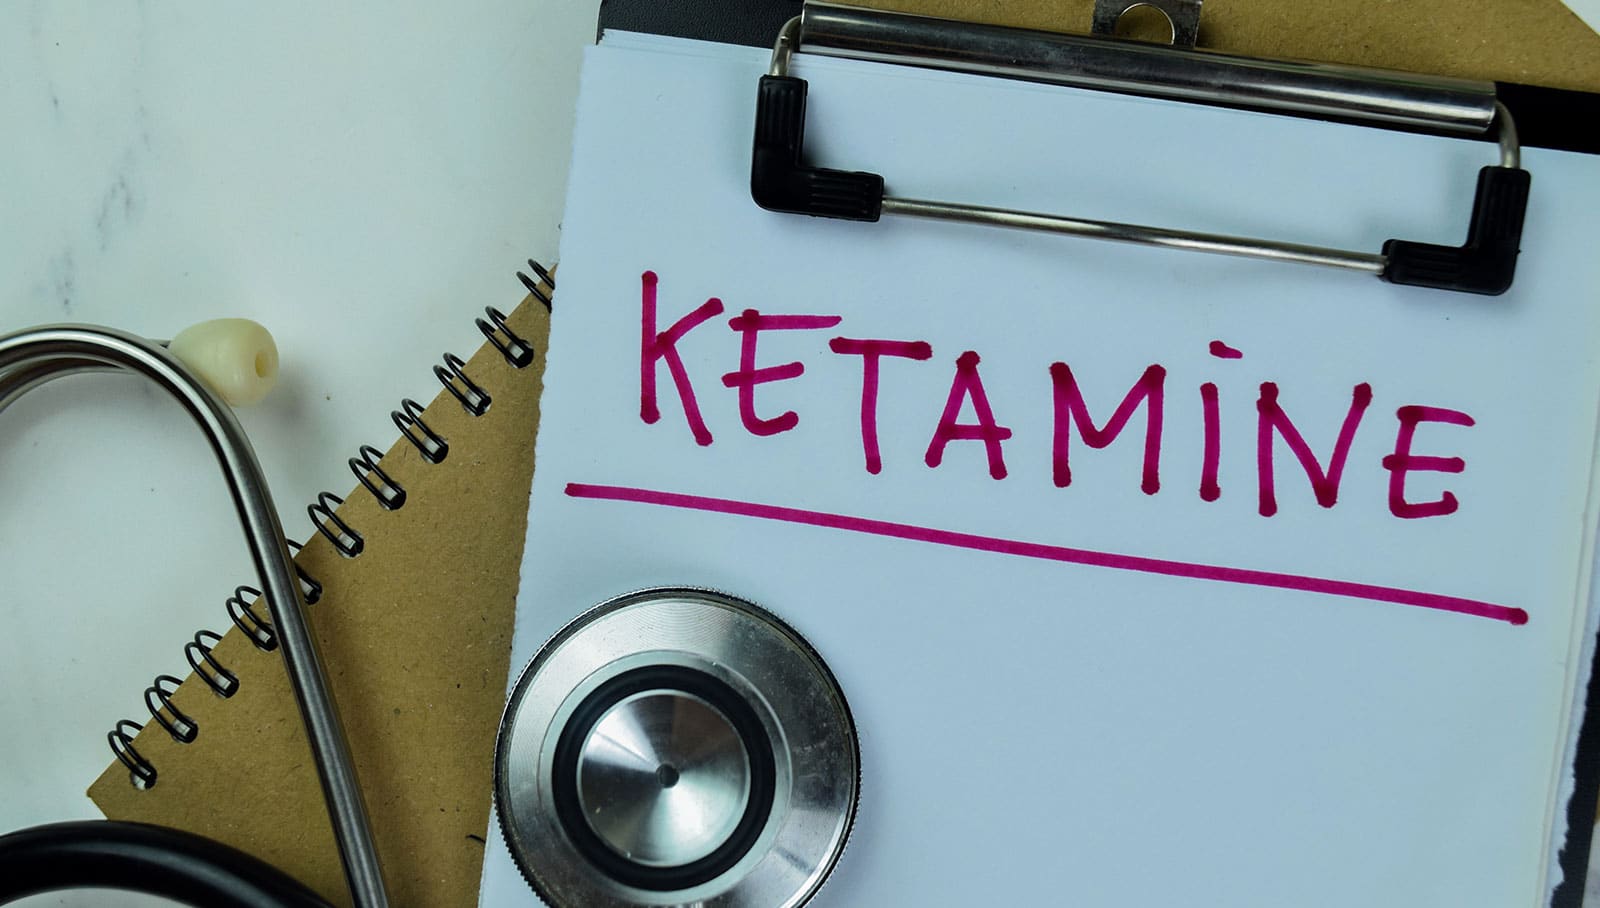 كم يستغرق علاج إدمان الكيتامين؟